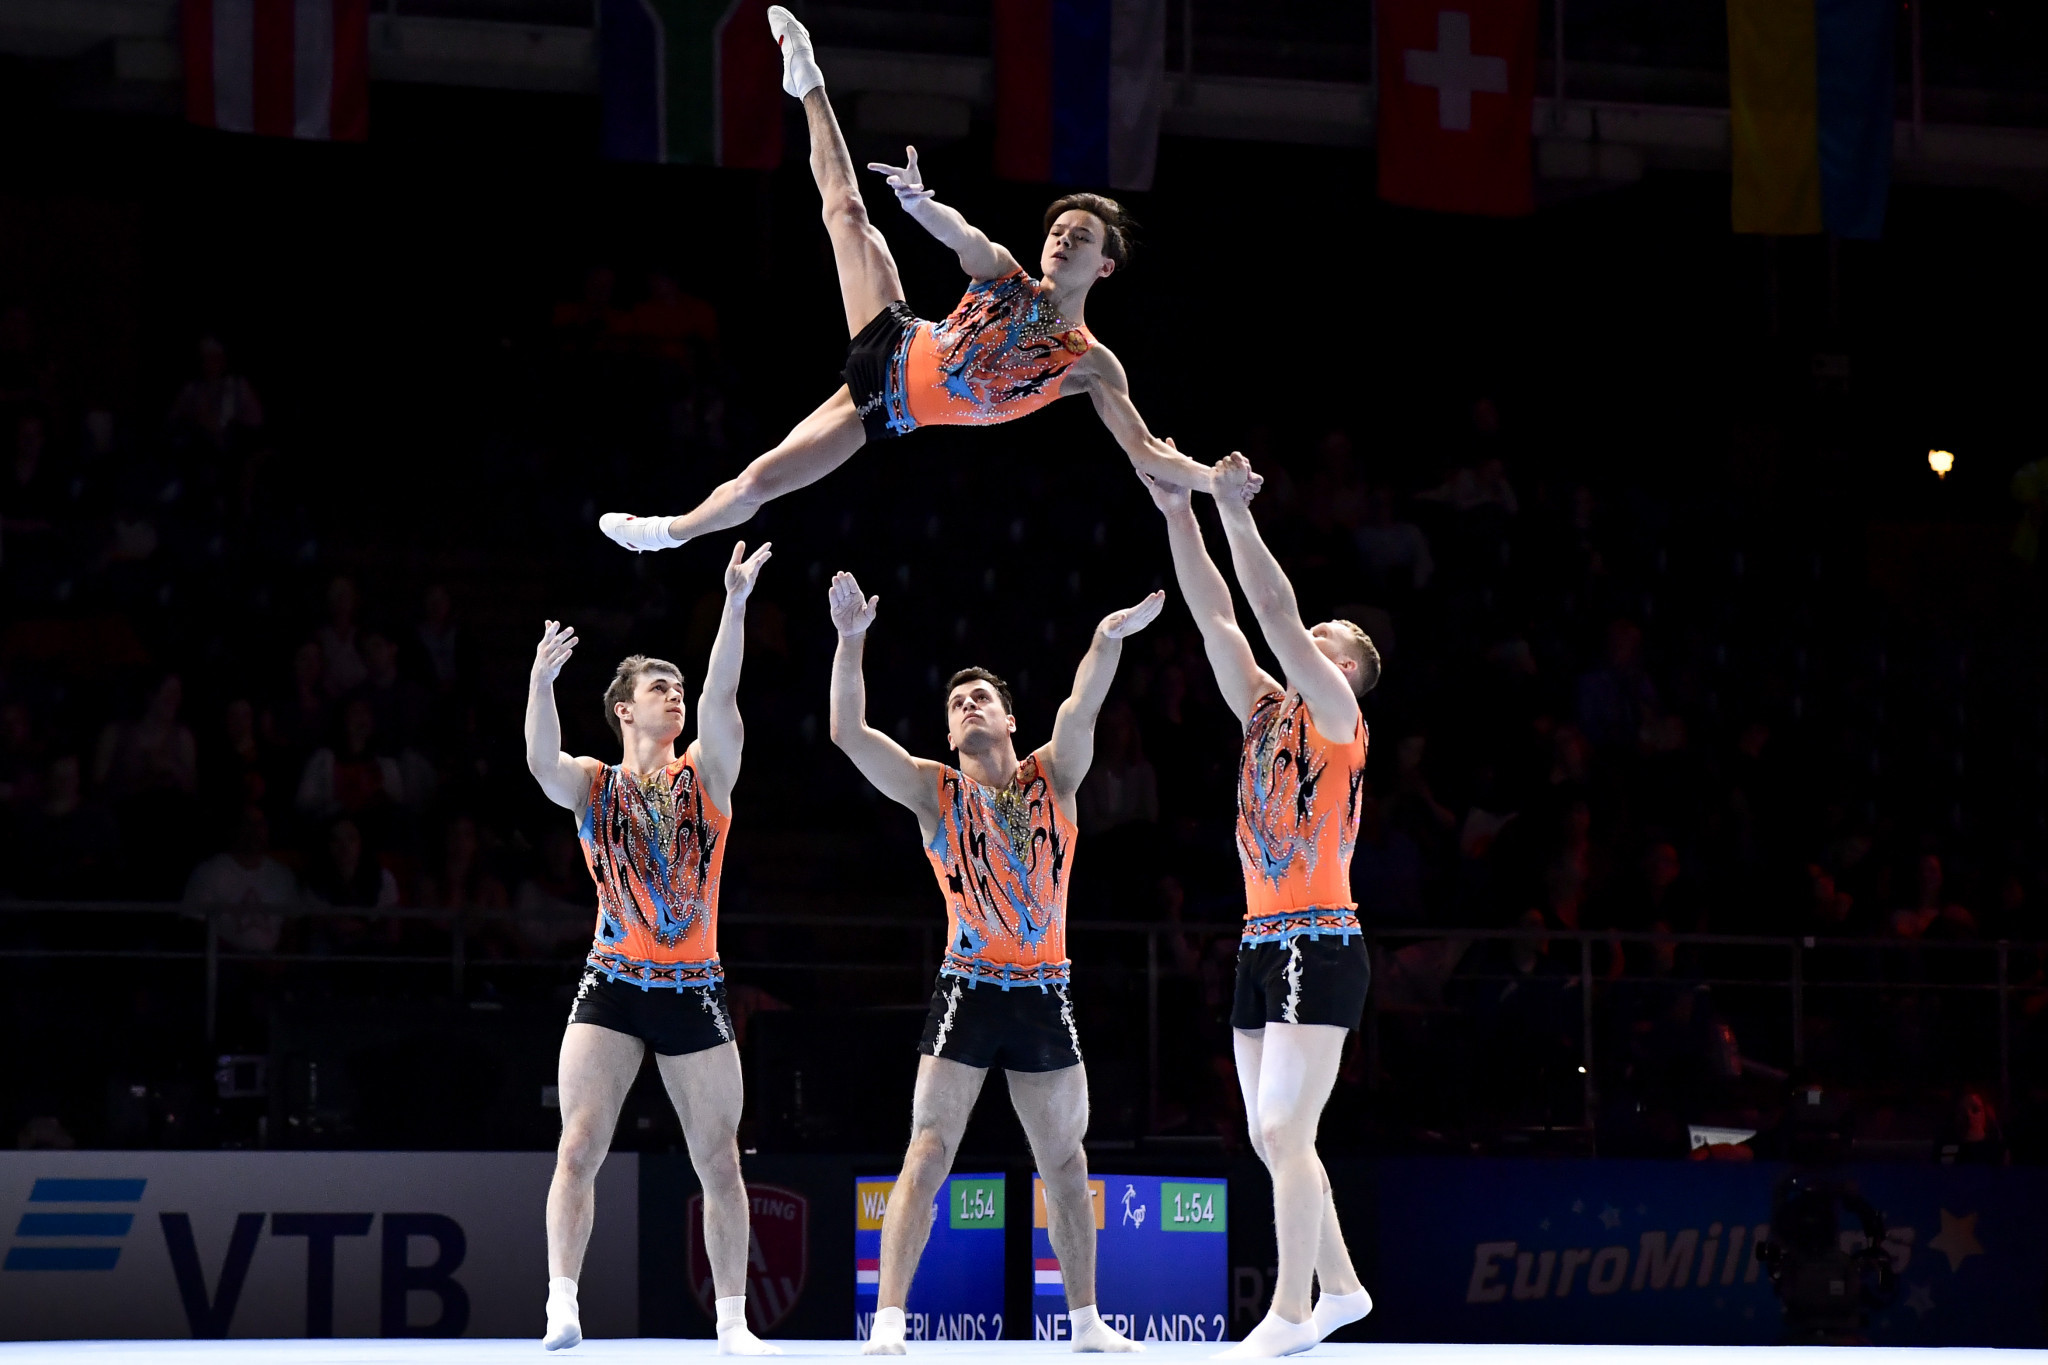 Genève devrait organiser la prochaine édition des Championnats du monde de gymnastique acrobatique, initialement prévue en 2020 © Getty Images